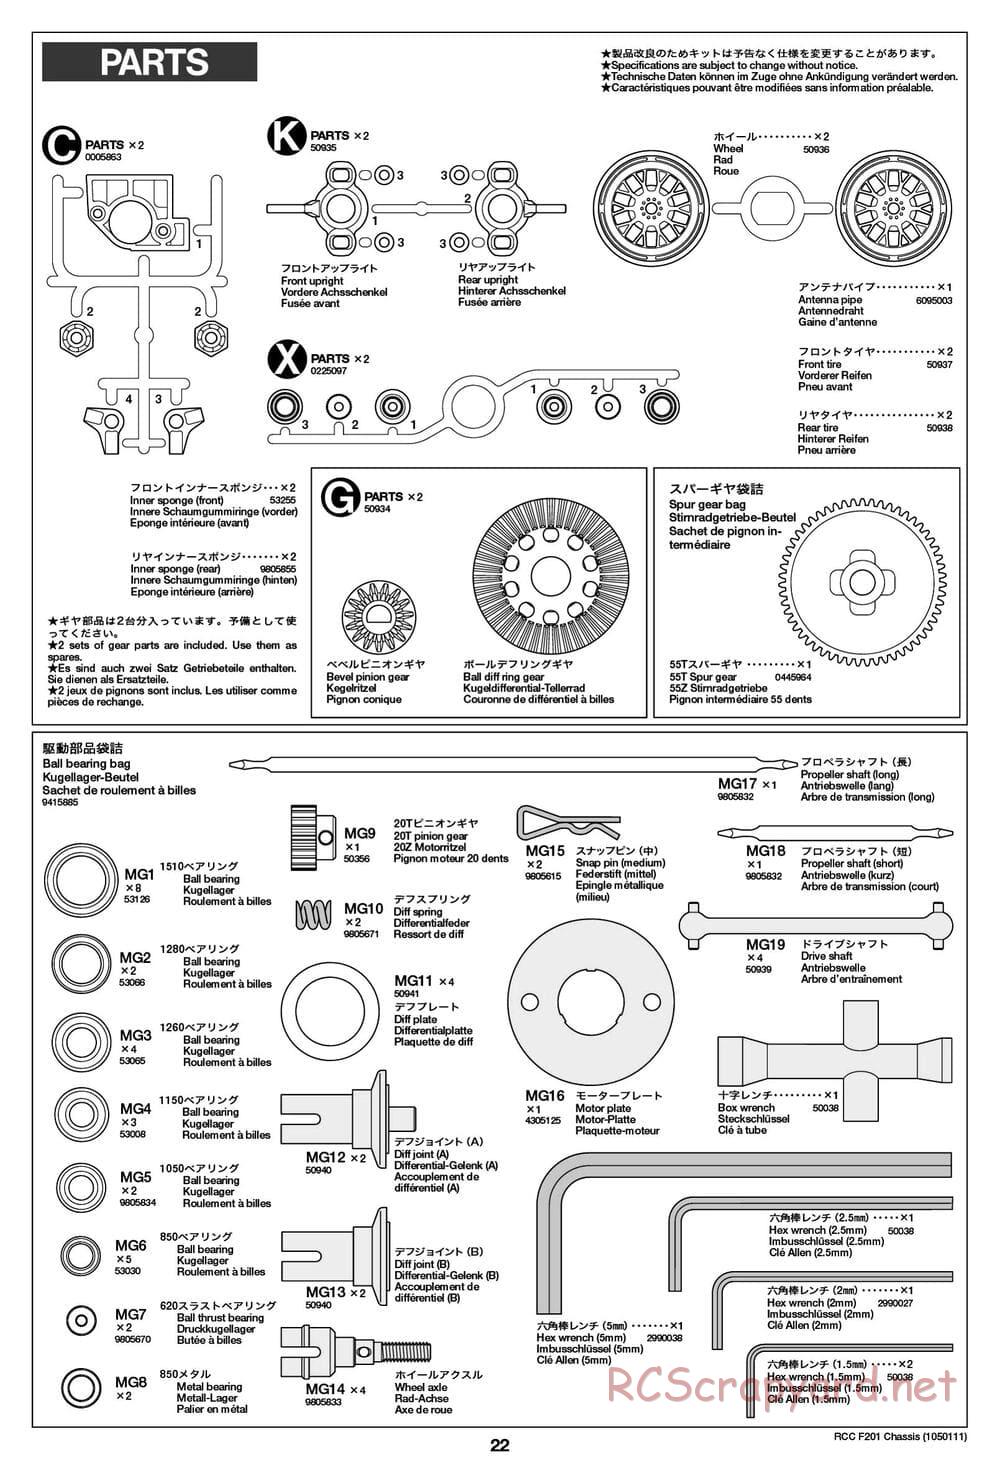 Tamiya - F201 Chassis - Manual - Page 22